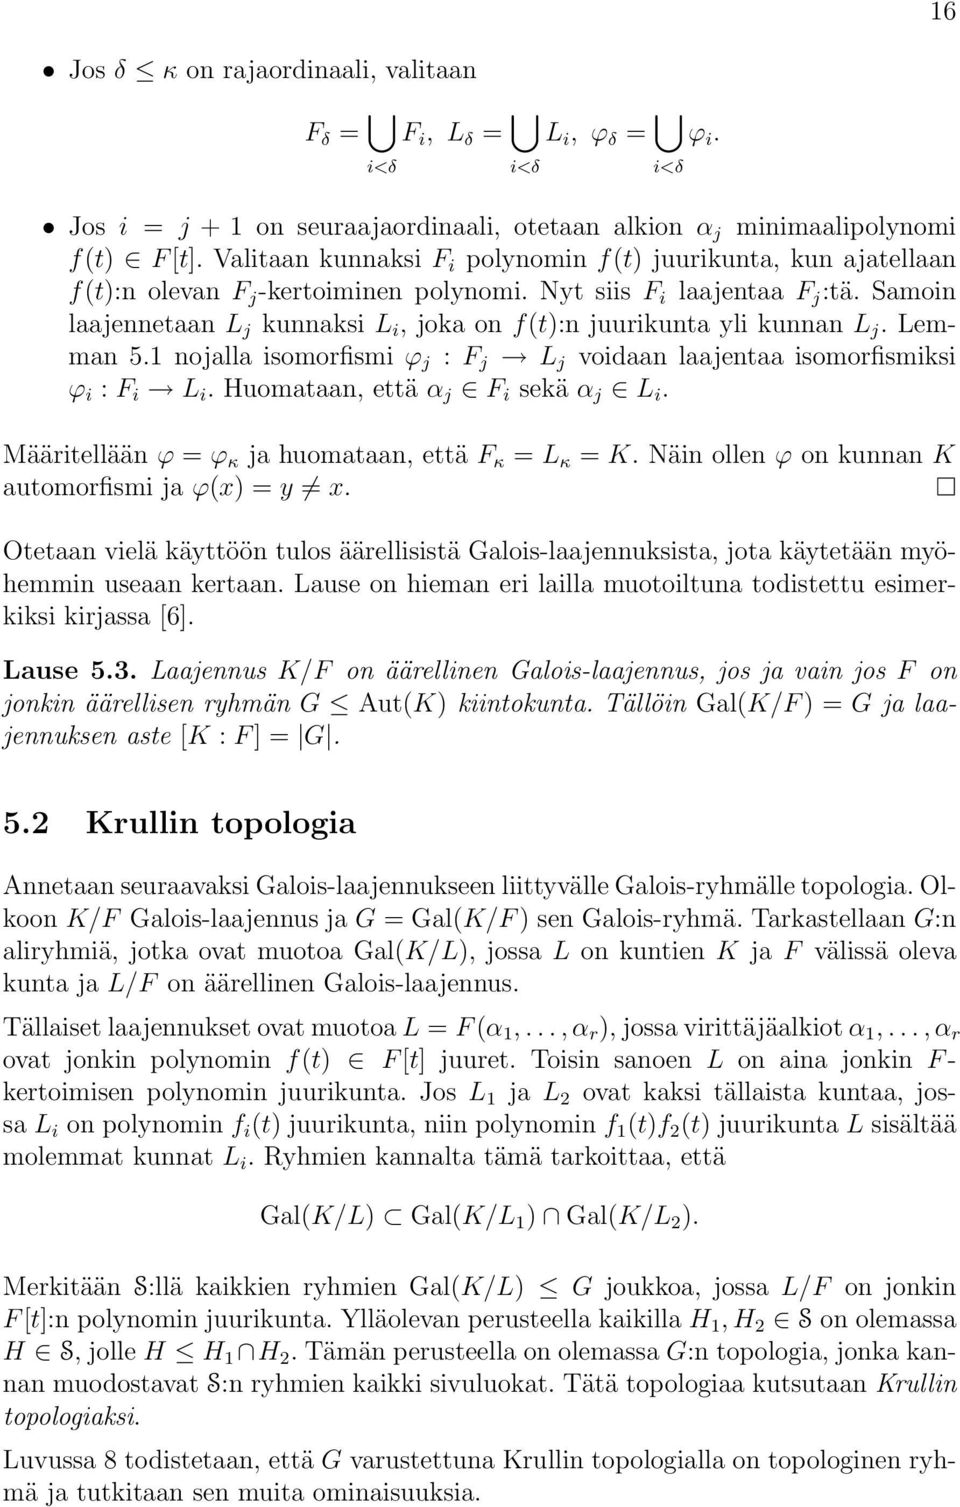 Samoin laajennetaan L j kunnaksi L i, joka on f(t):n juurikunta yli kunnan L j. Lemman 5.1 nojalla isomorfismi ϕ j : F j L j voidaan laajentaa isomorfismiksi ϕ i : F i L i.